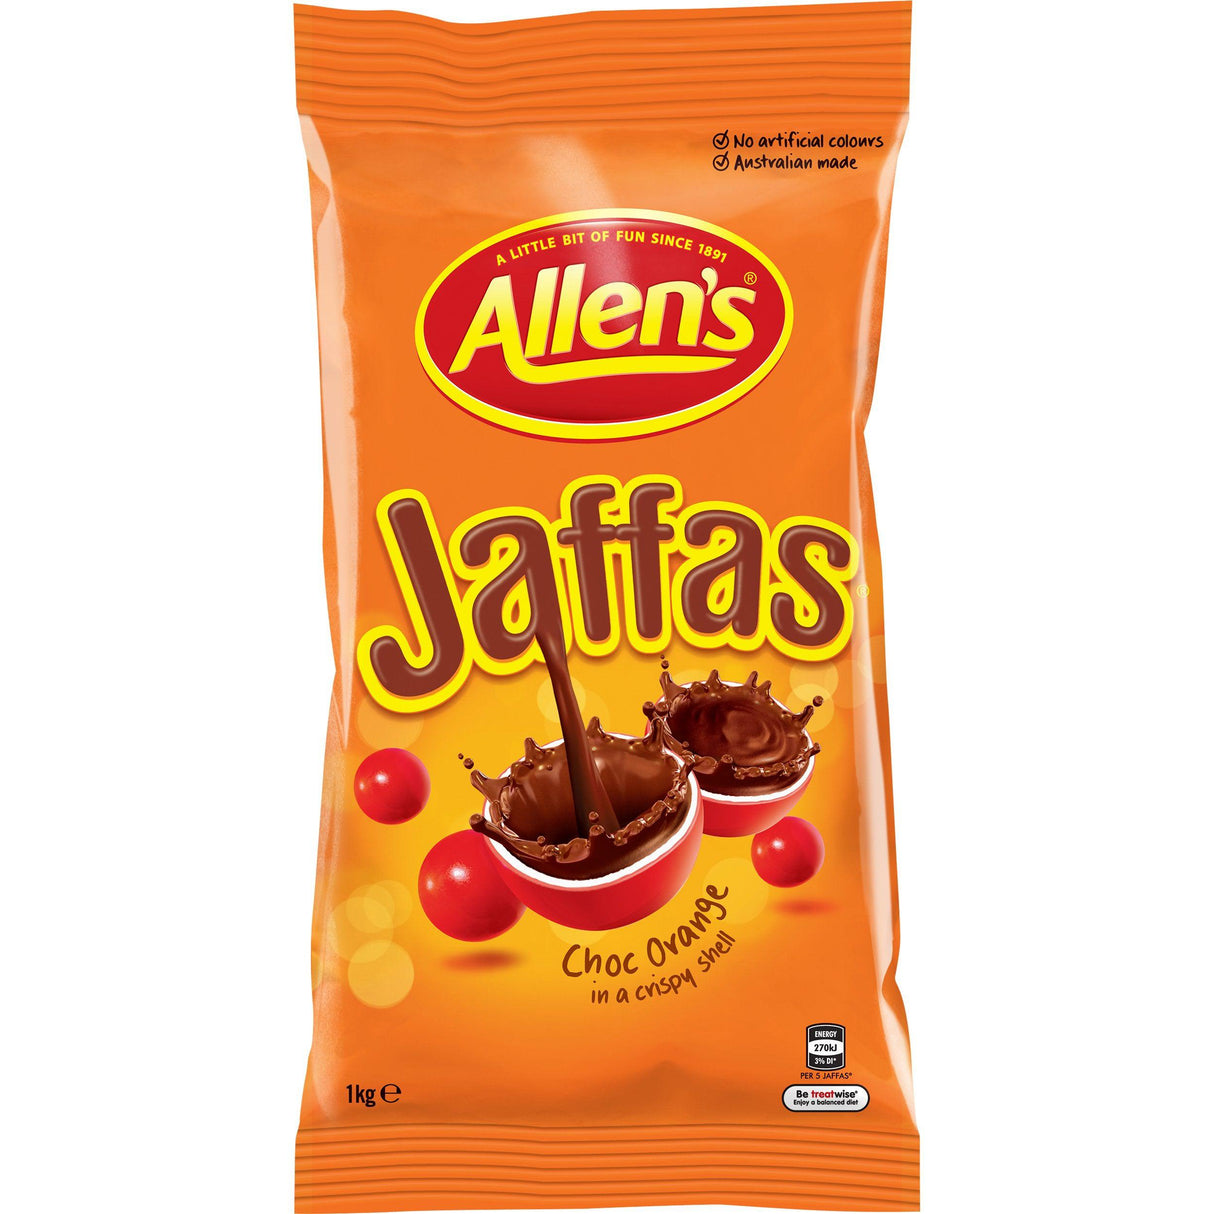 Allen's Jaffas 1kg